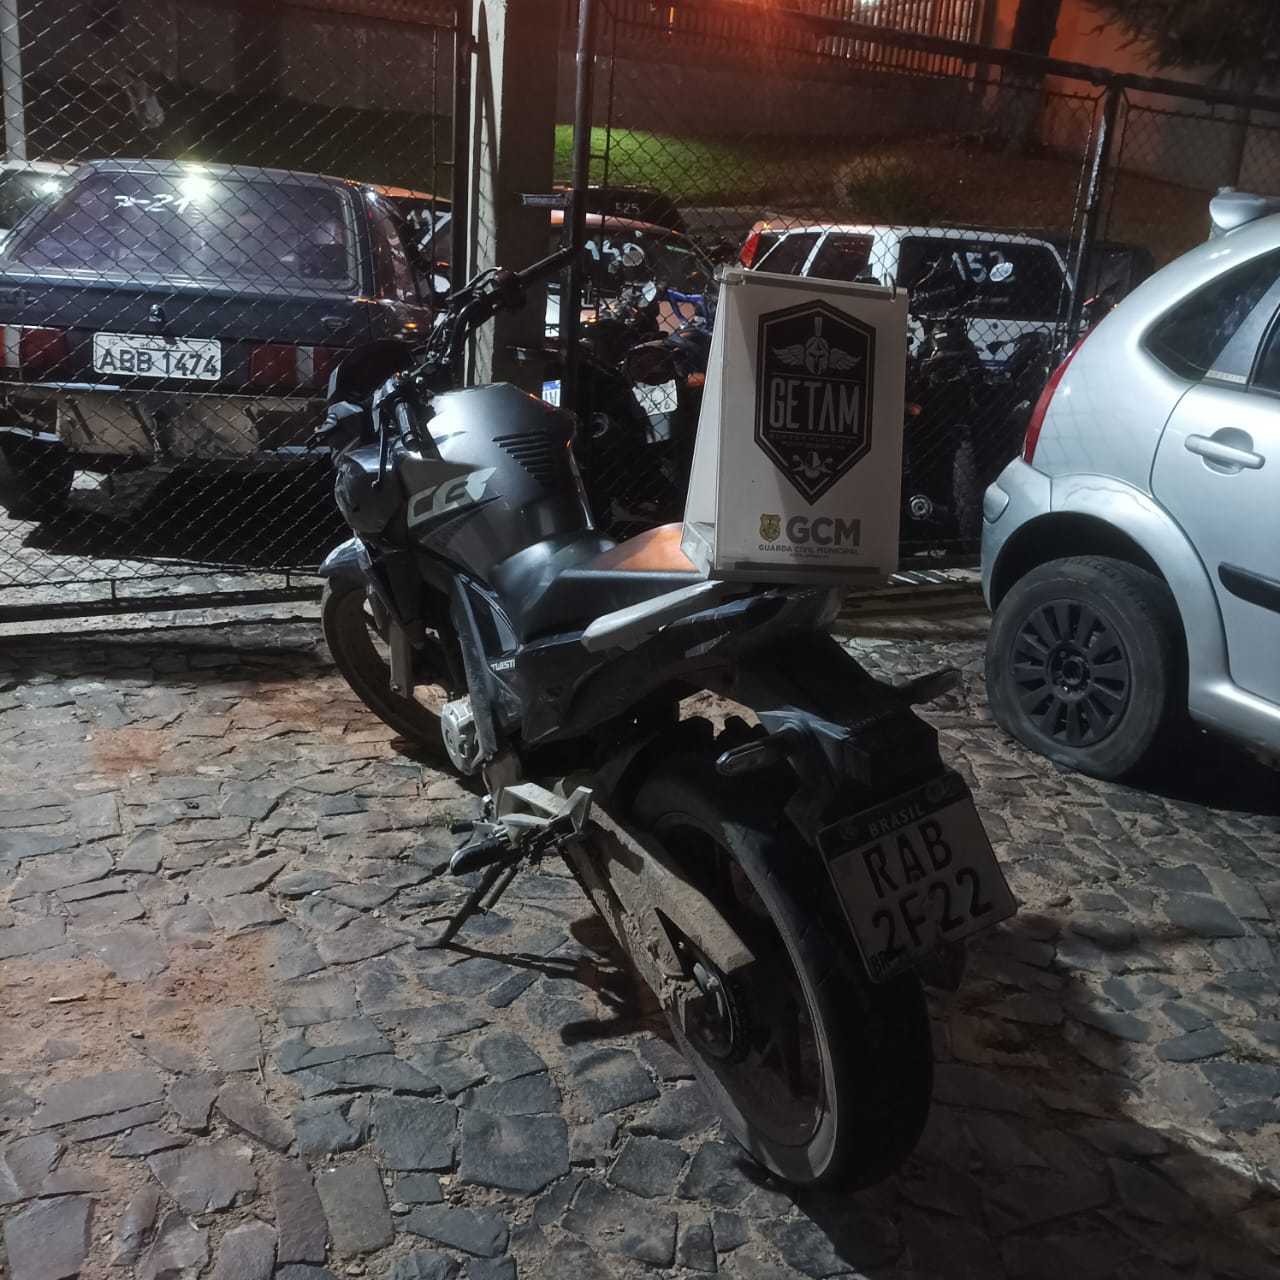 Motocicleta foi apreendida e encaminhada para a 13ª Subdivisão Policial